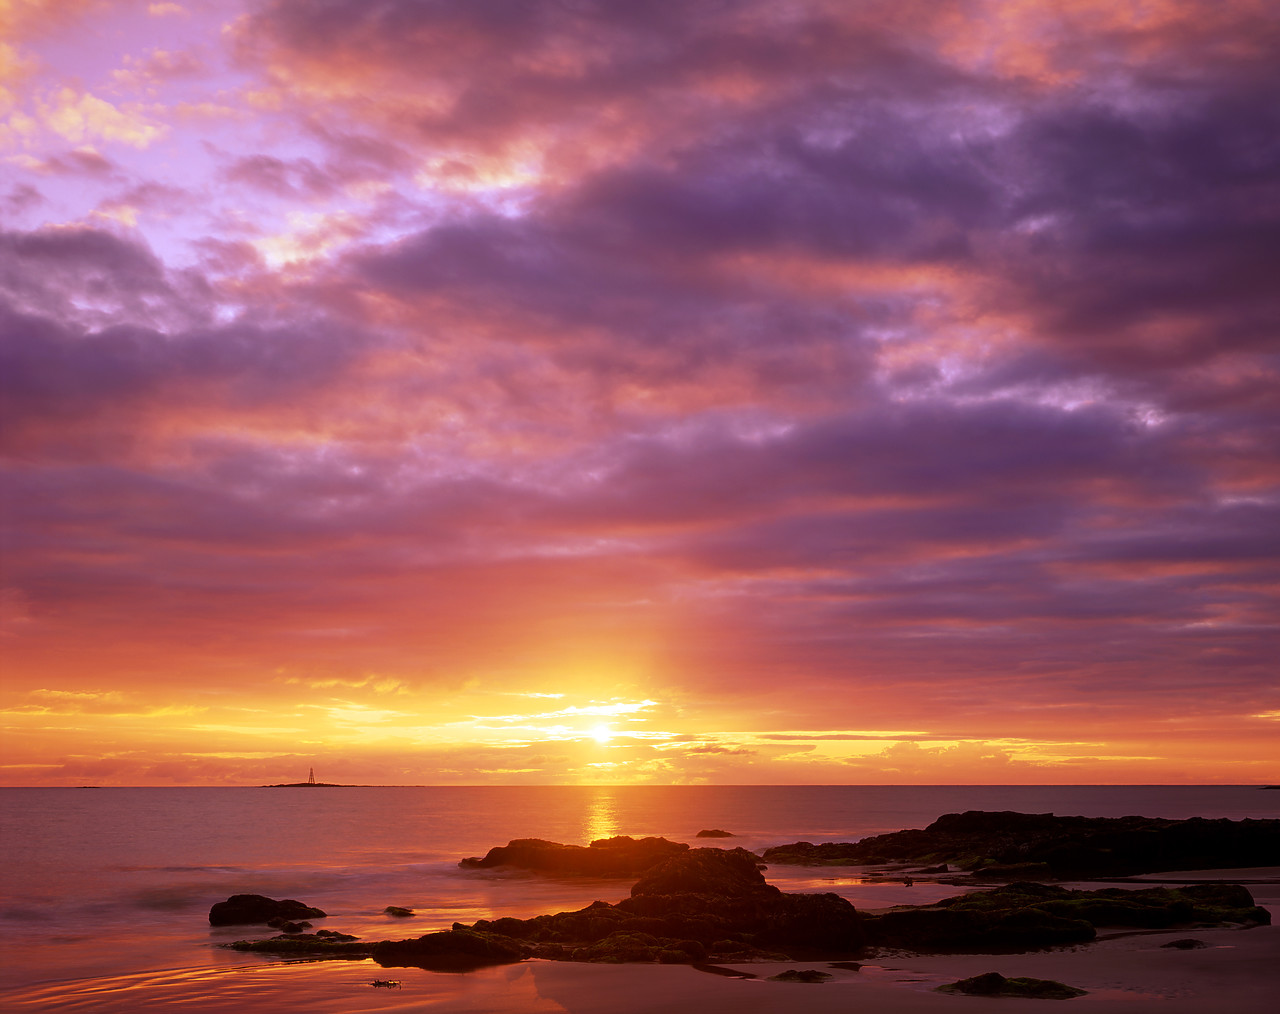 #010375-2 - Sunrise over Lossiemouth Beach, Lossiemouth, Grampian Region, Scotland